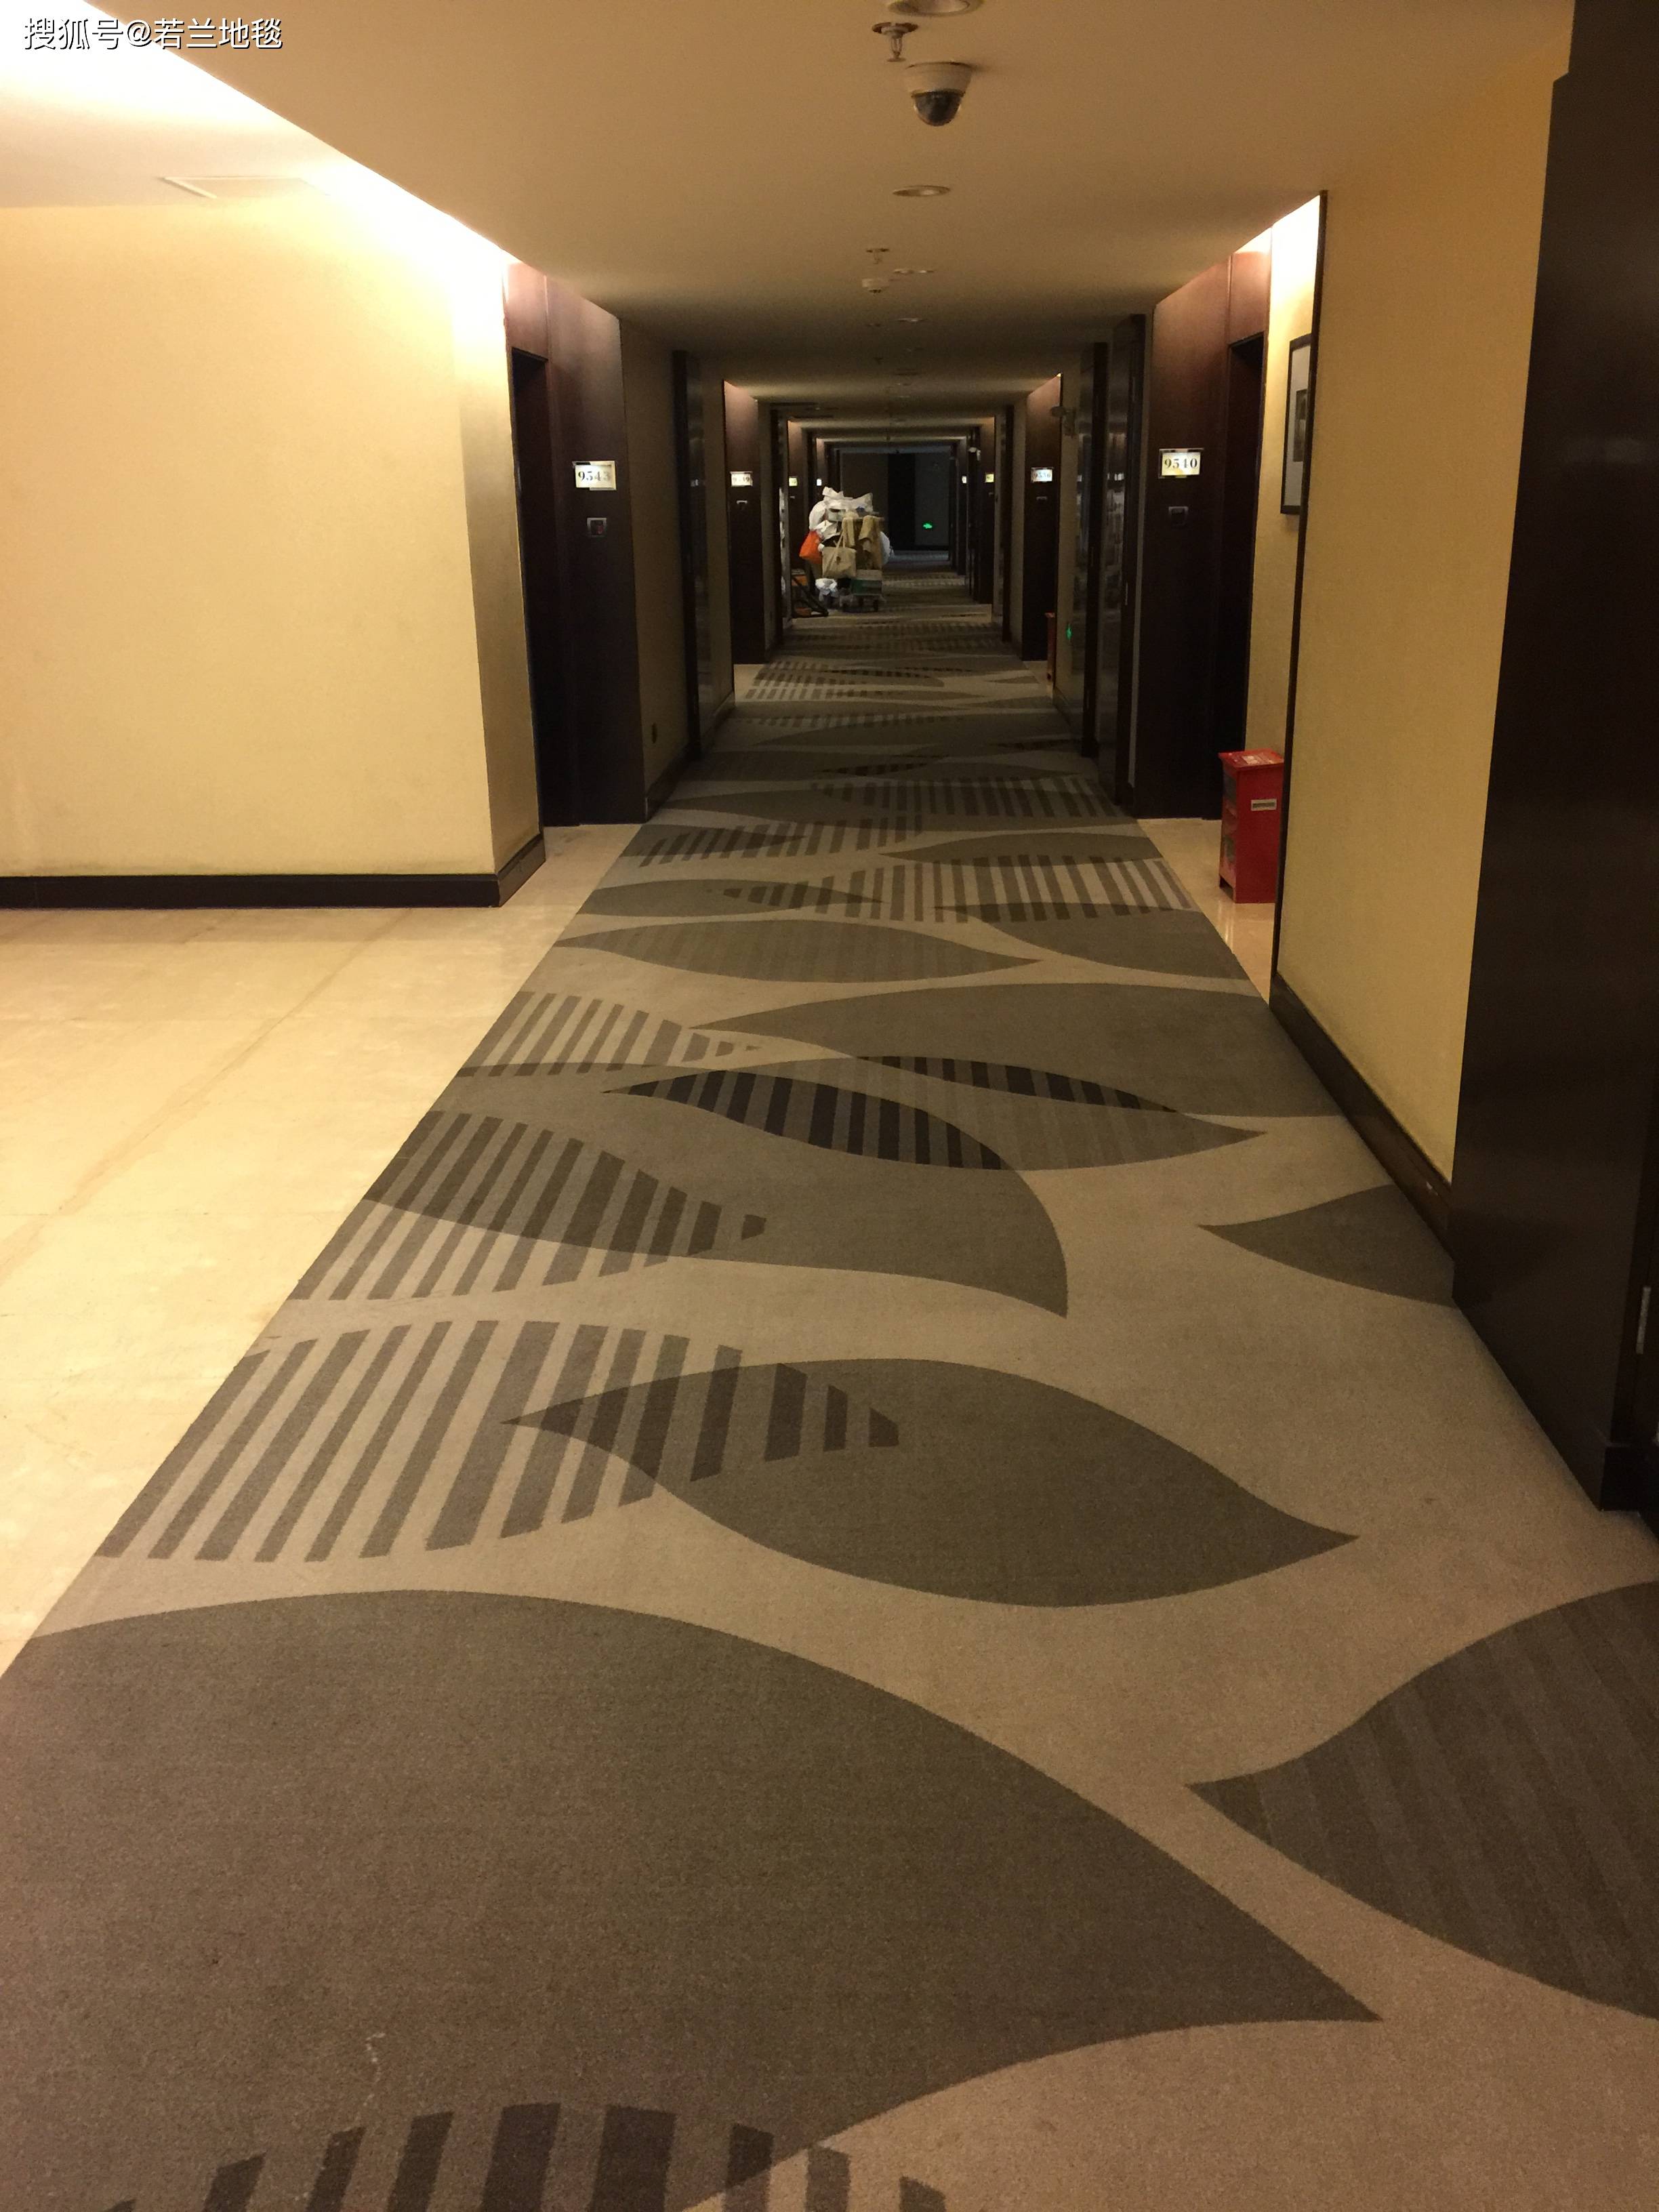 五星级酒店地毯效果图图片